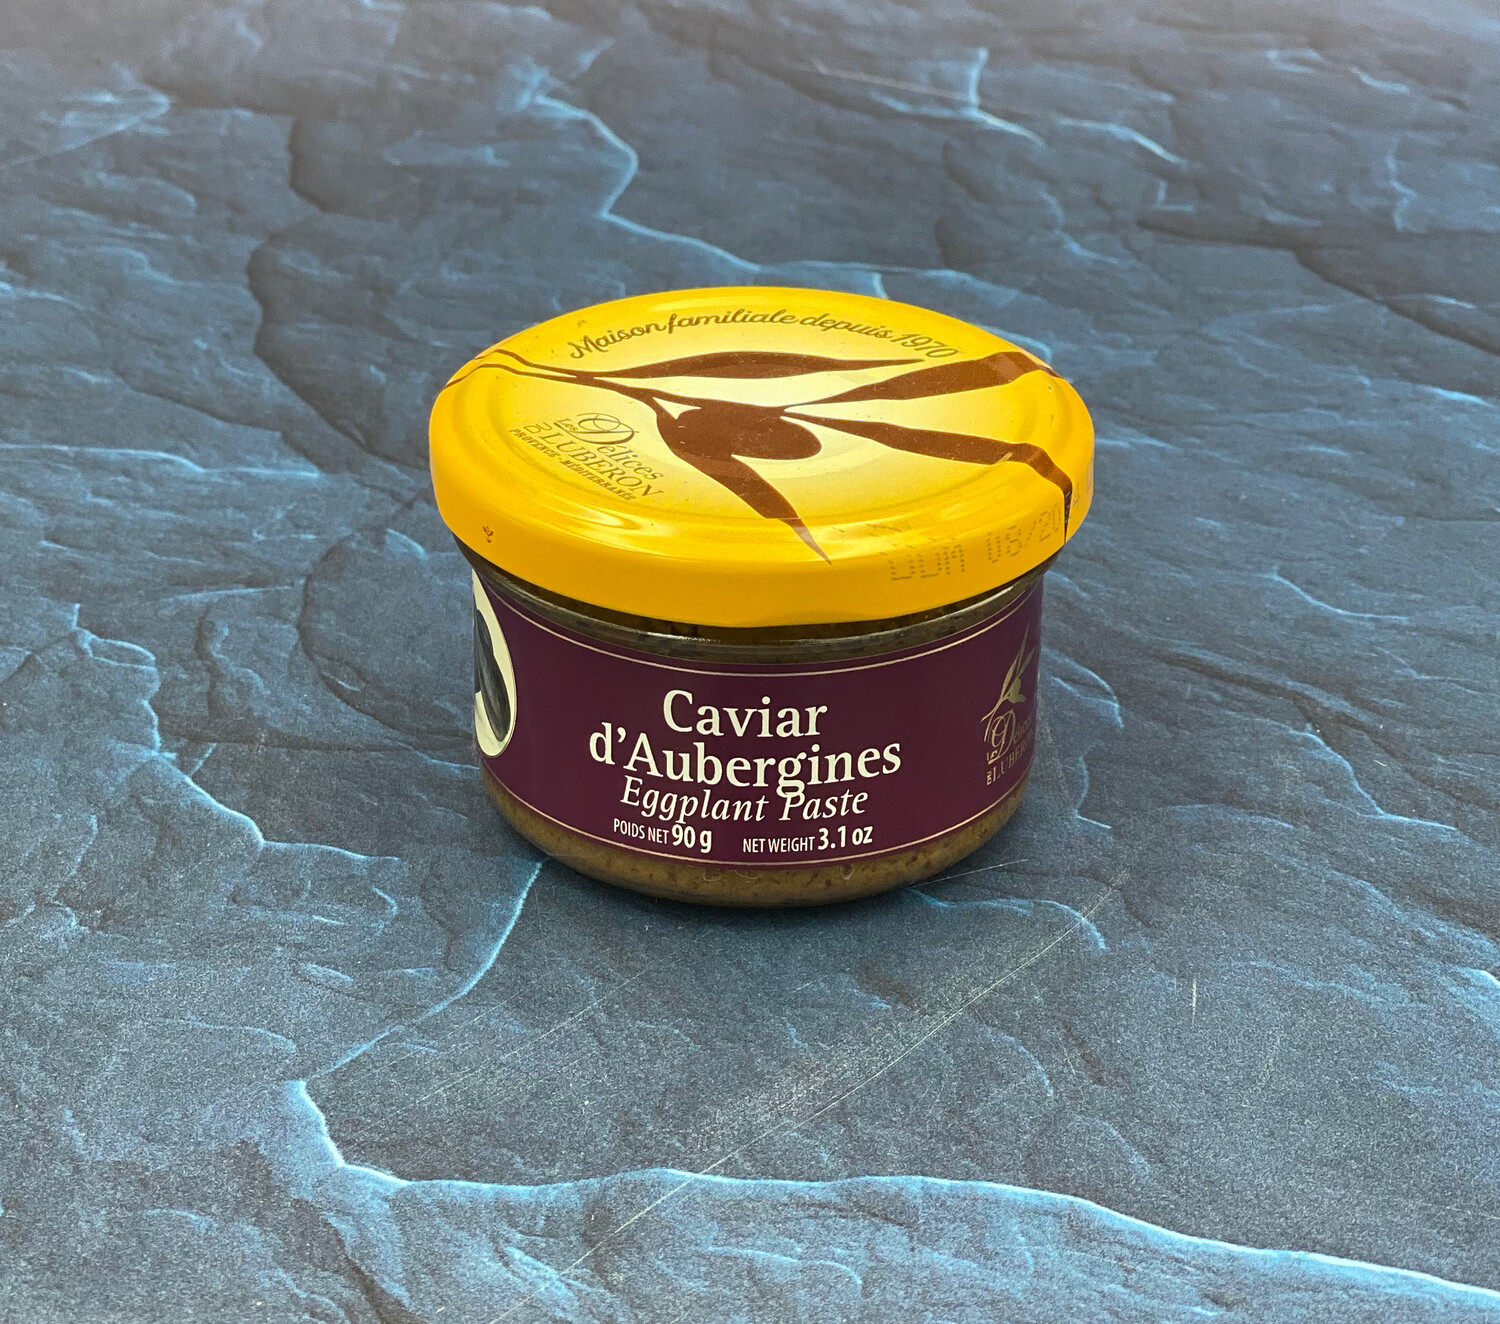 Caviar d'Aubergines Eggplant Paste